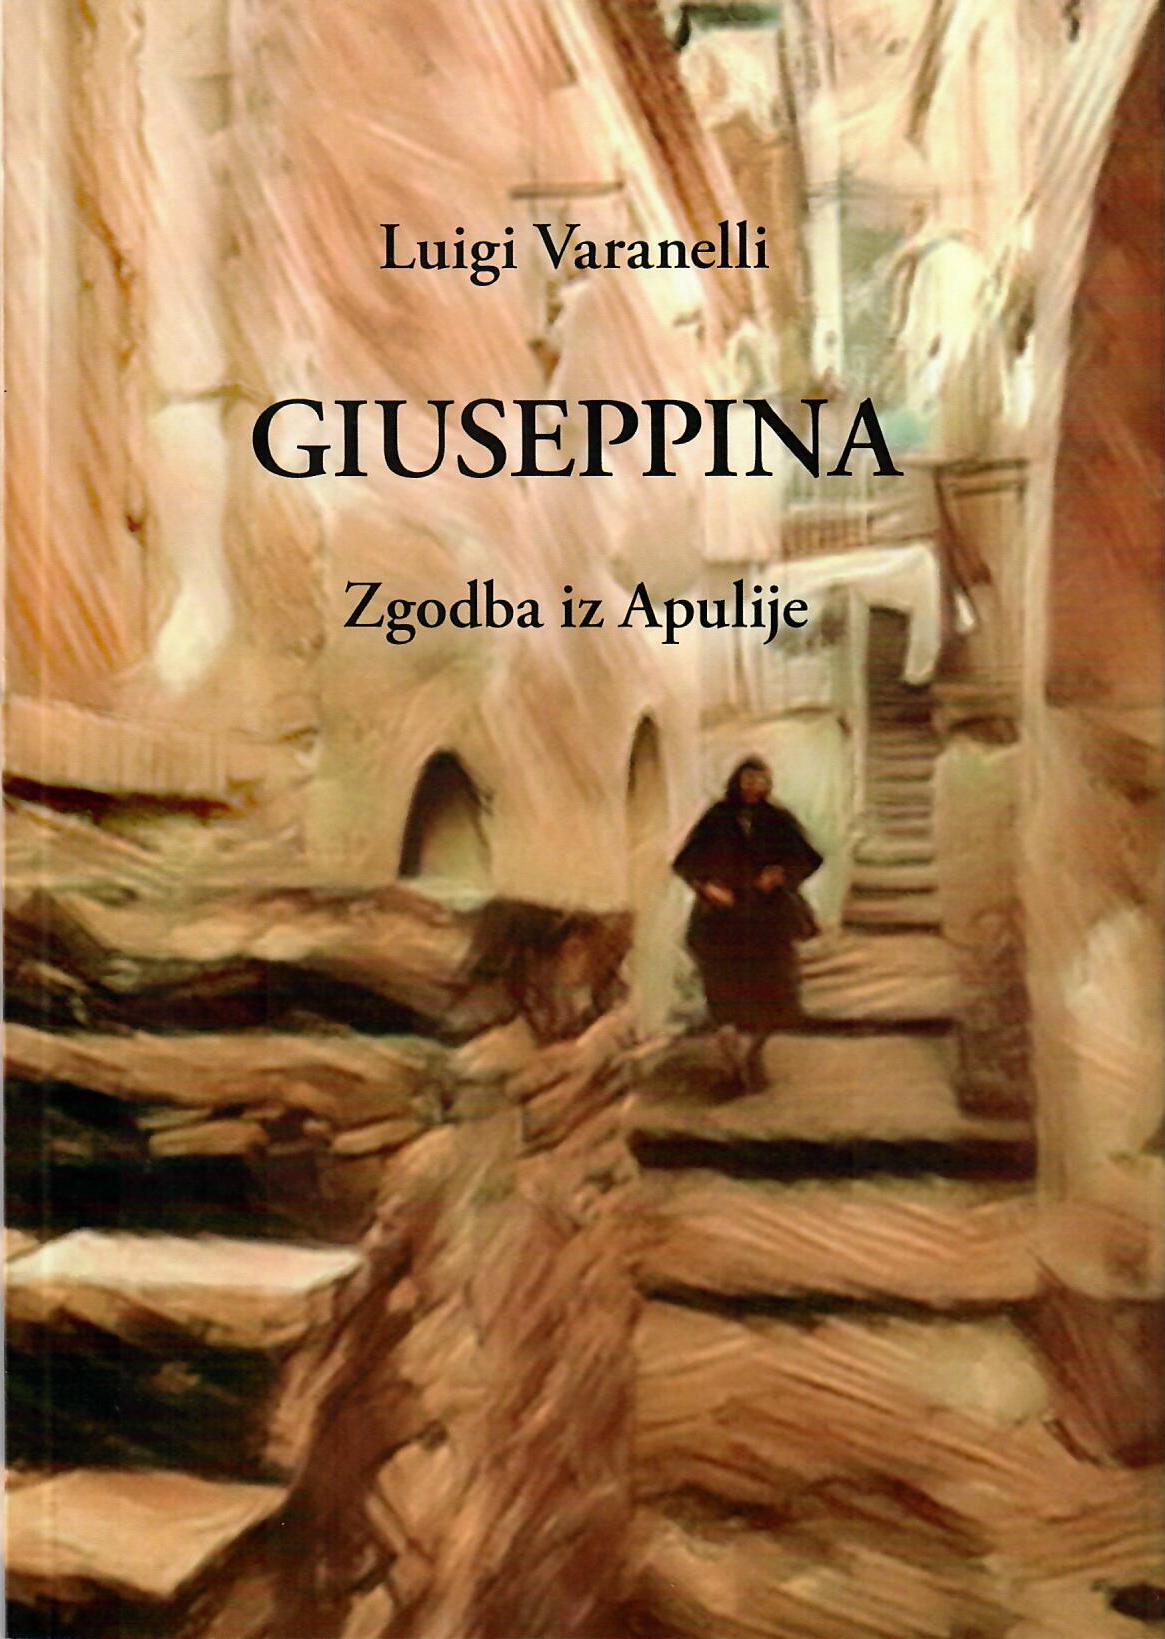 Giuseppina: Zgodba iz Apulije